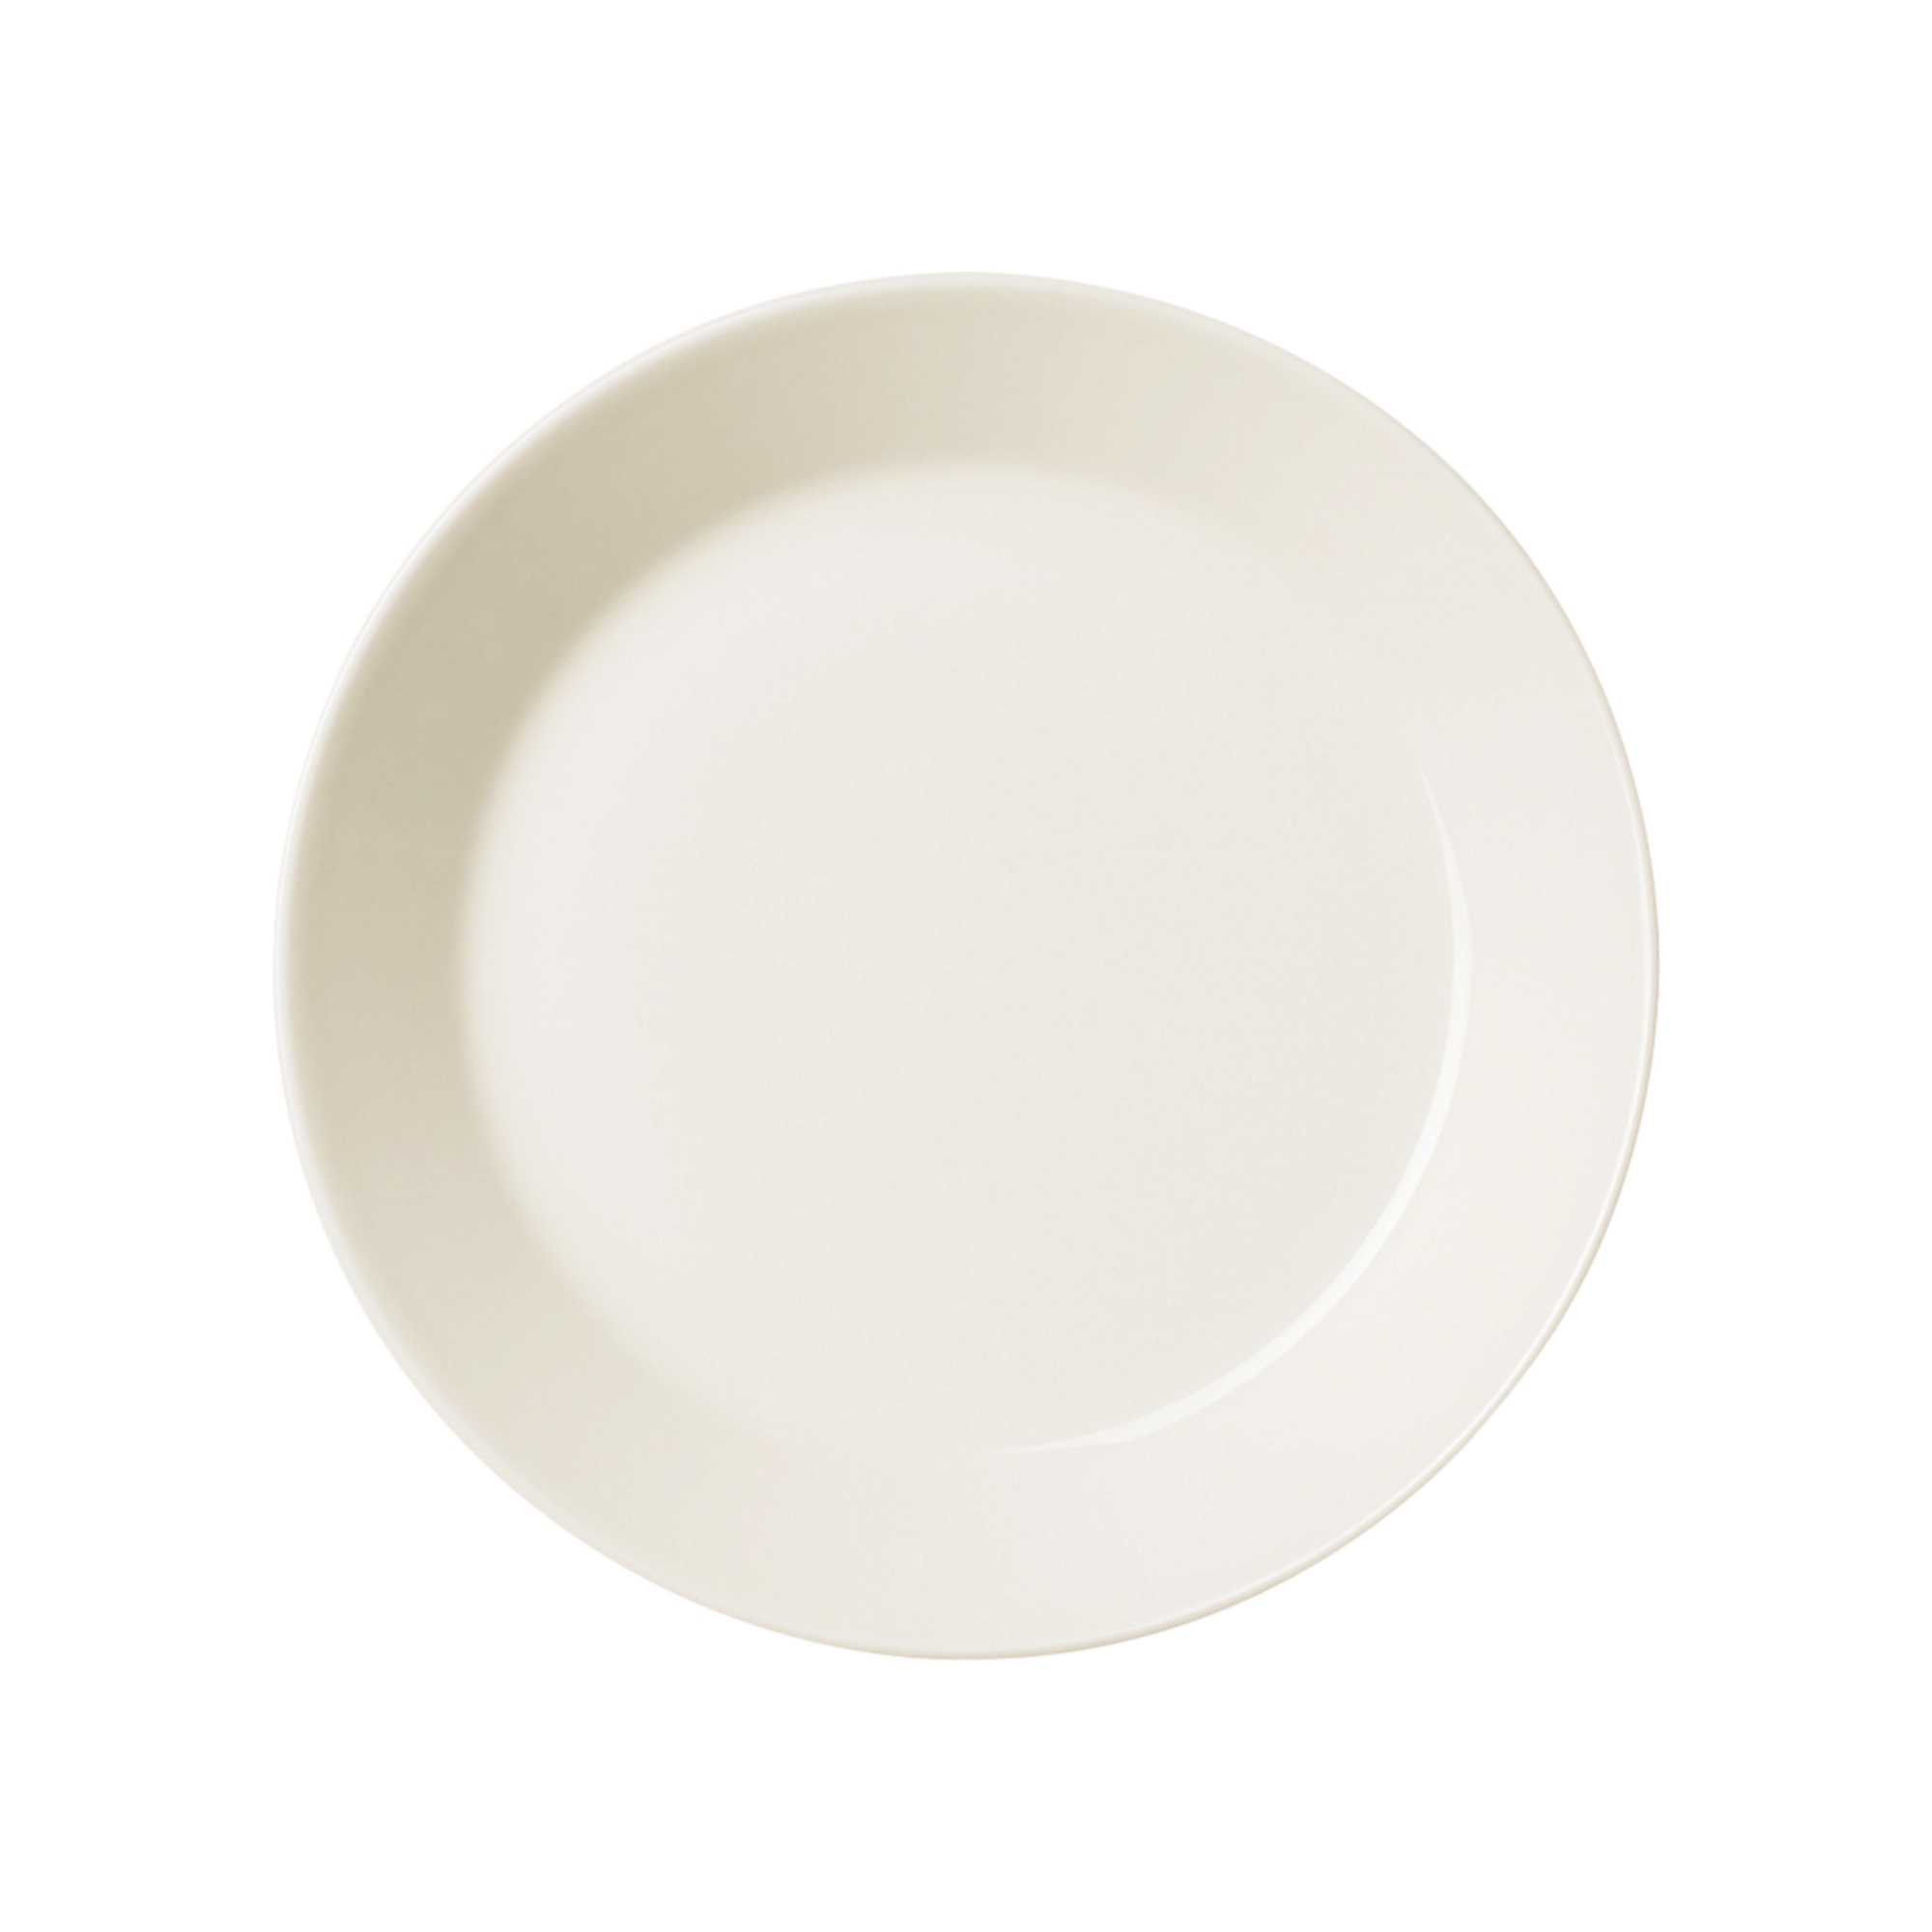 Teema 접시 17cm 흰색